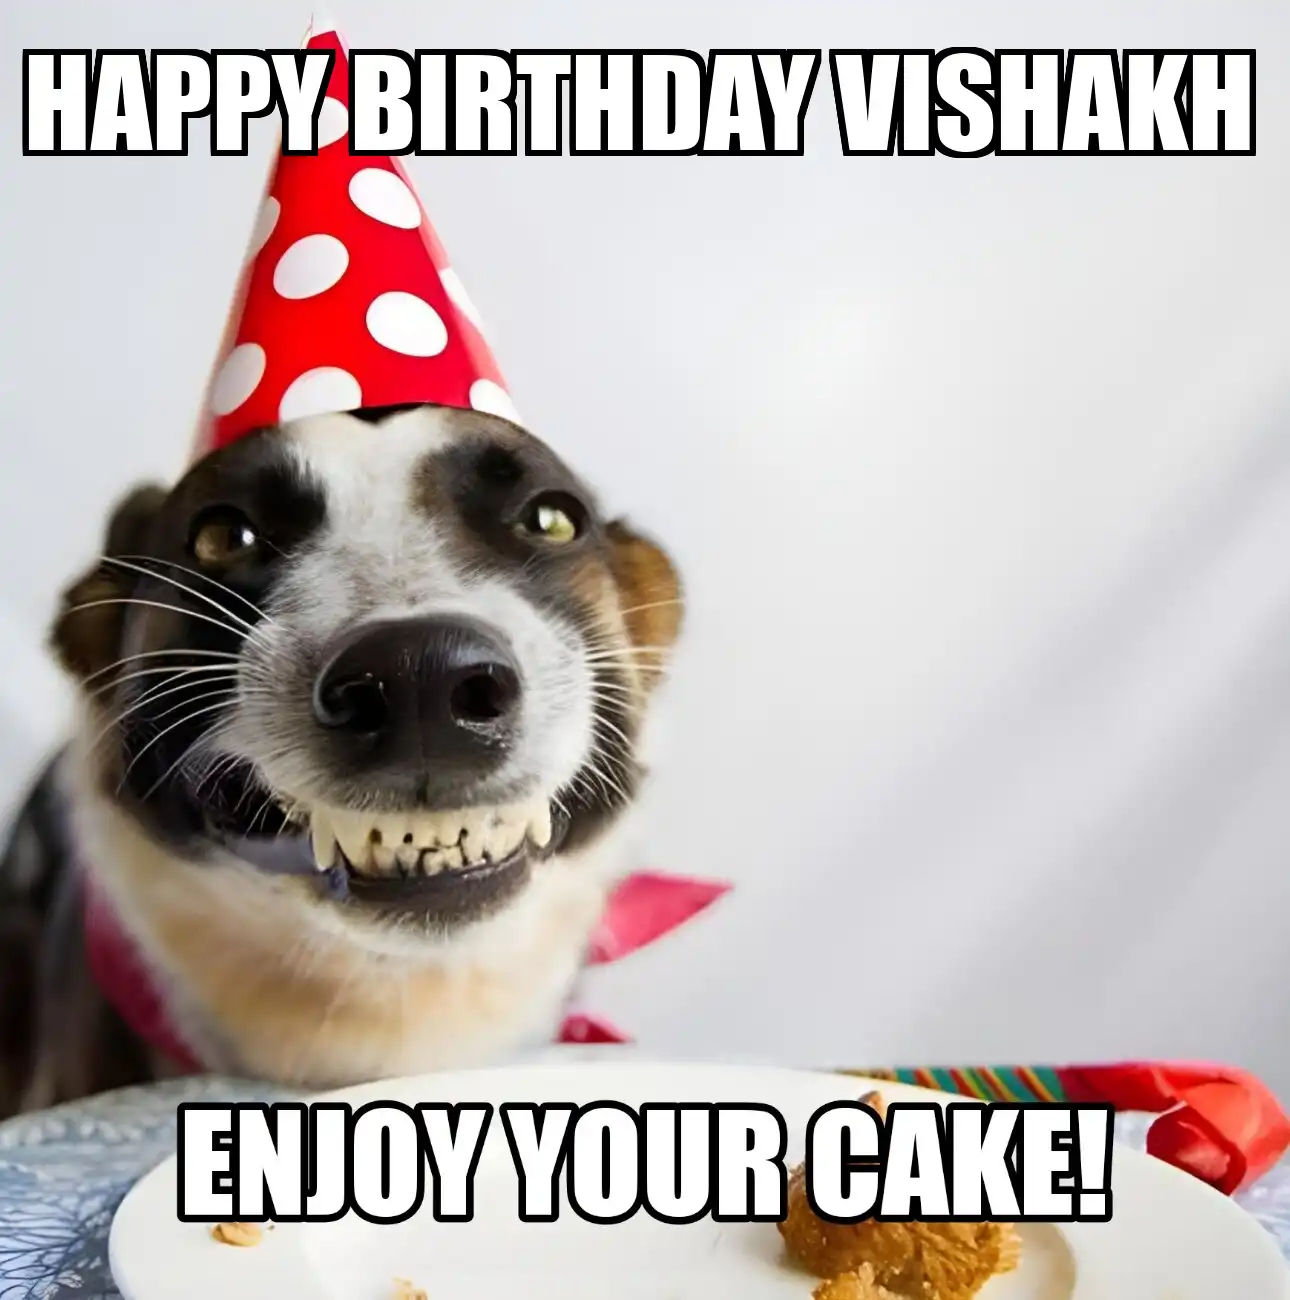 Happy Birthday Vishakh Enjoy Your Cake Dog Meme